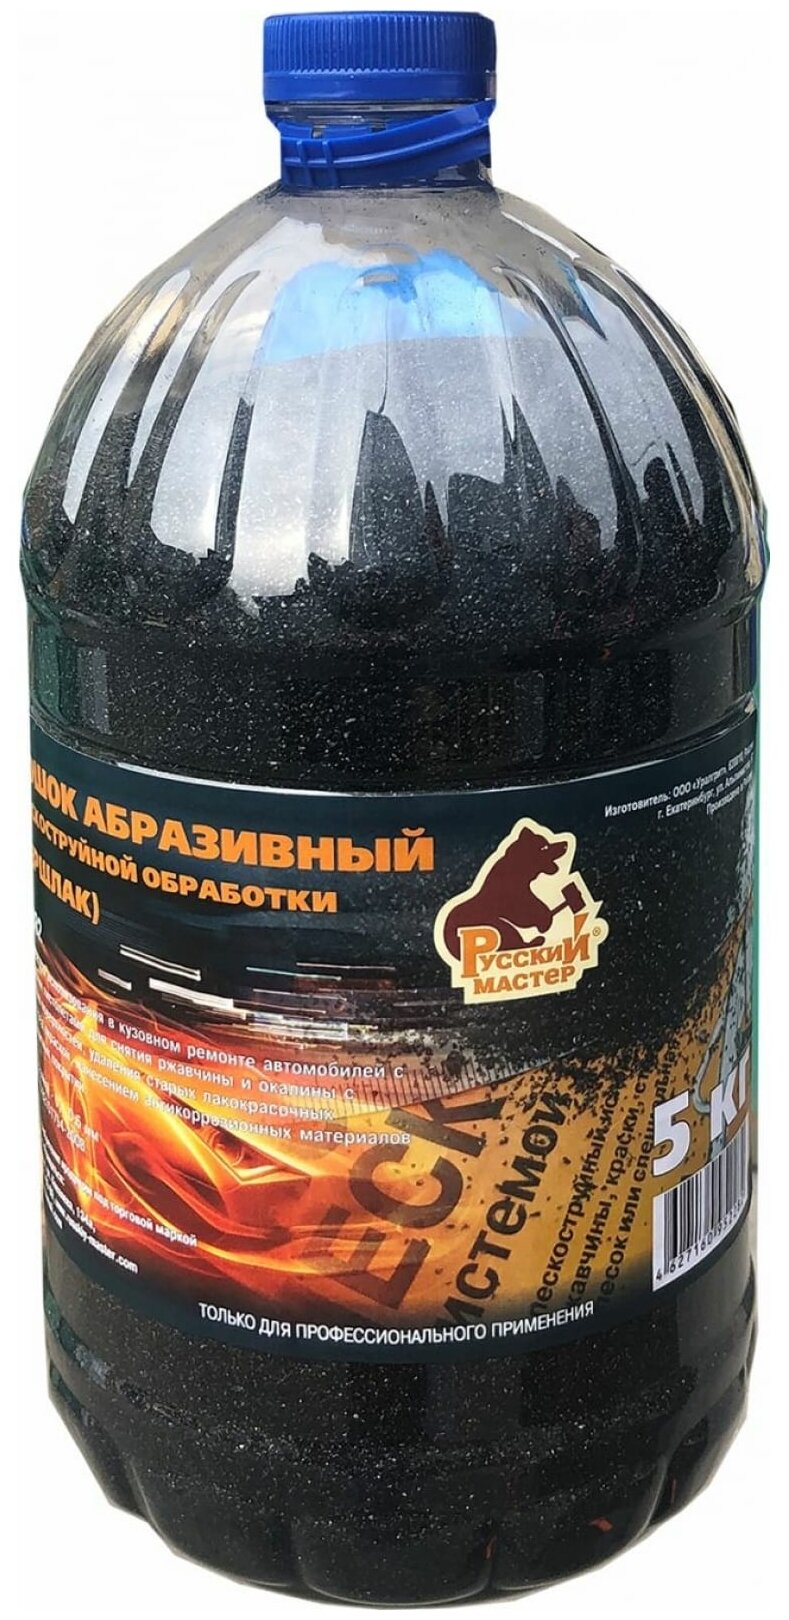 Русский Мастер Порошок абразивный для пескоструйной обработки купершлак 0,1-0,6мм 5кг РМ-52282